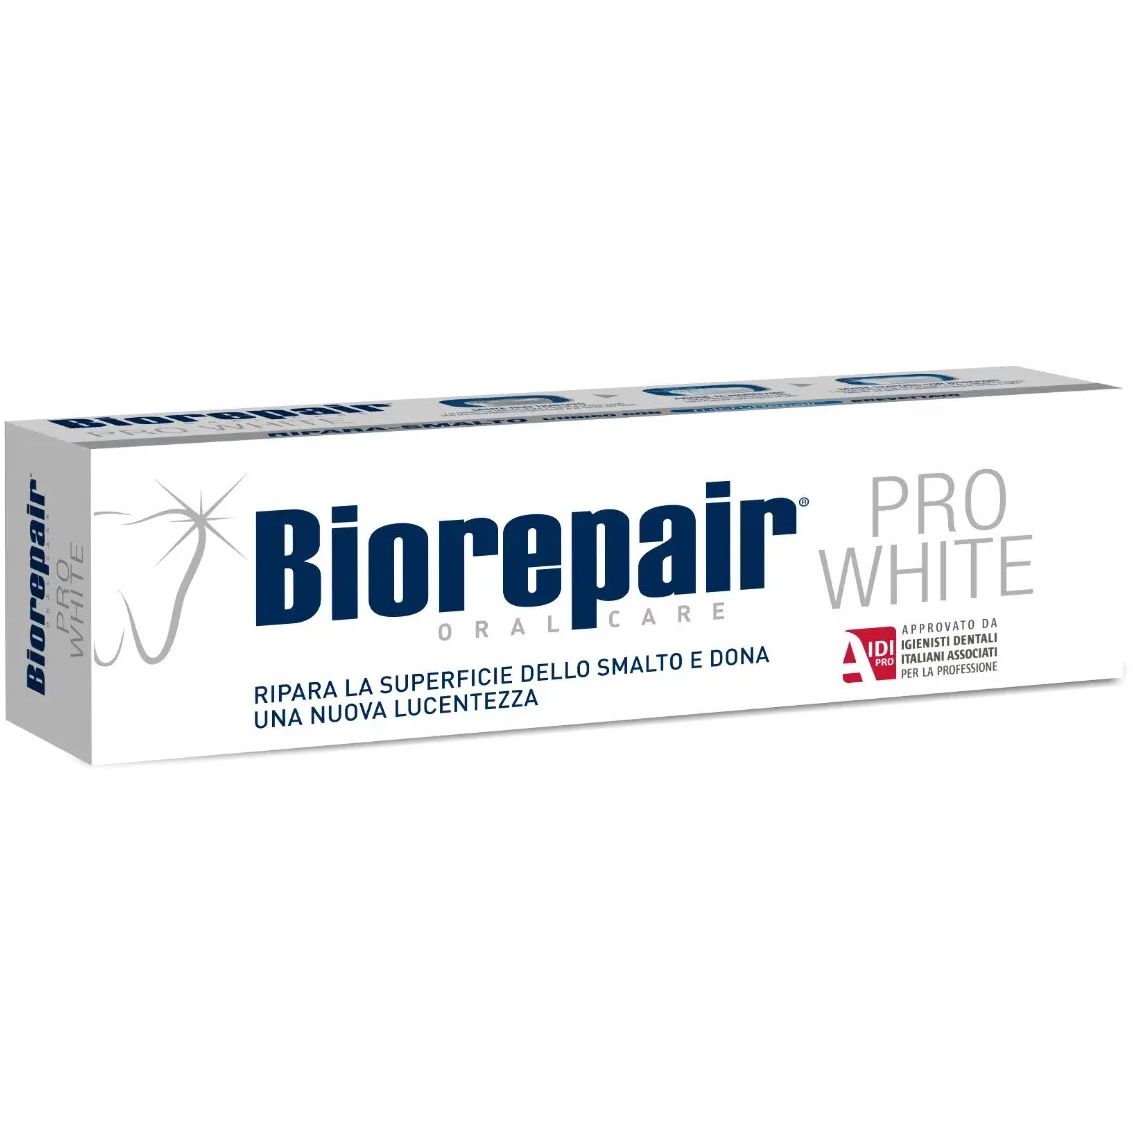 Зубная паста Biorepair Pro White 75 мл - фото 1